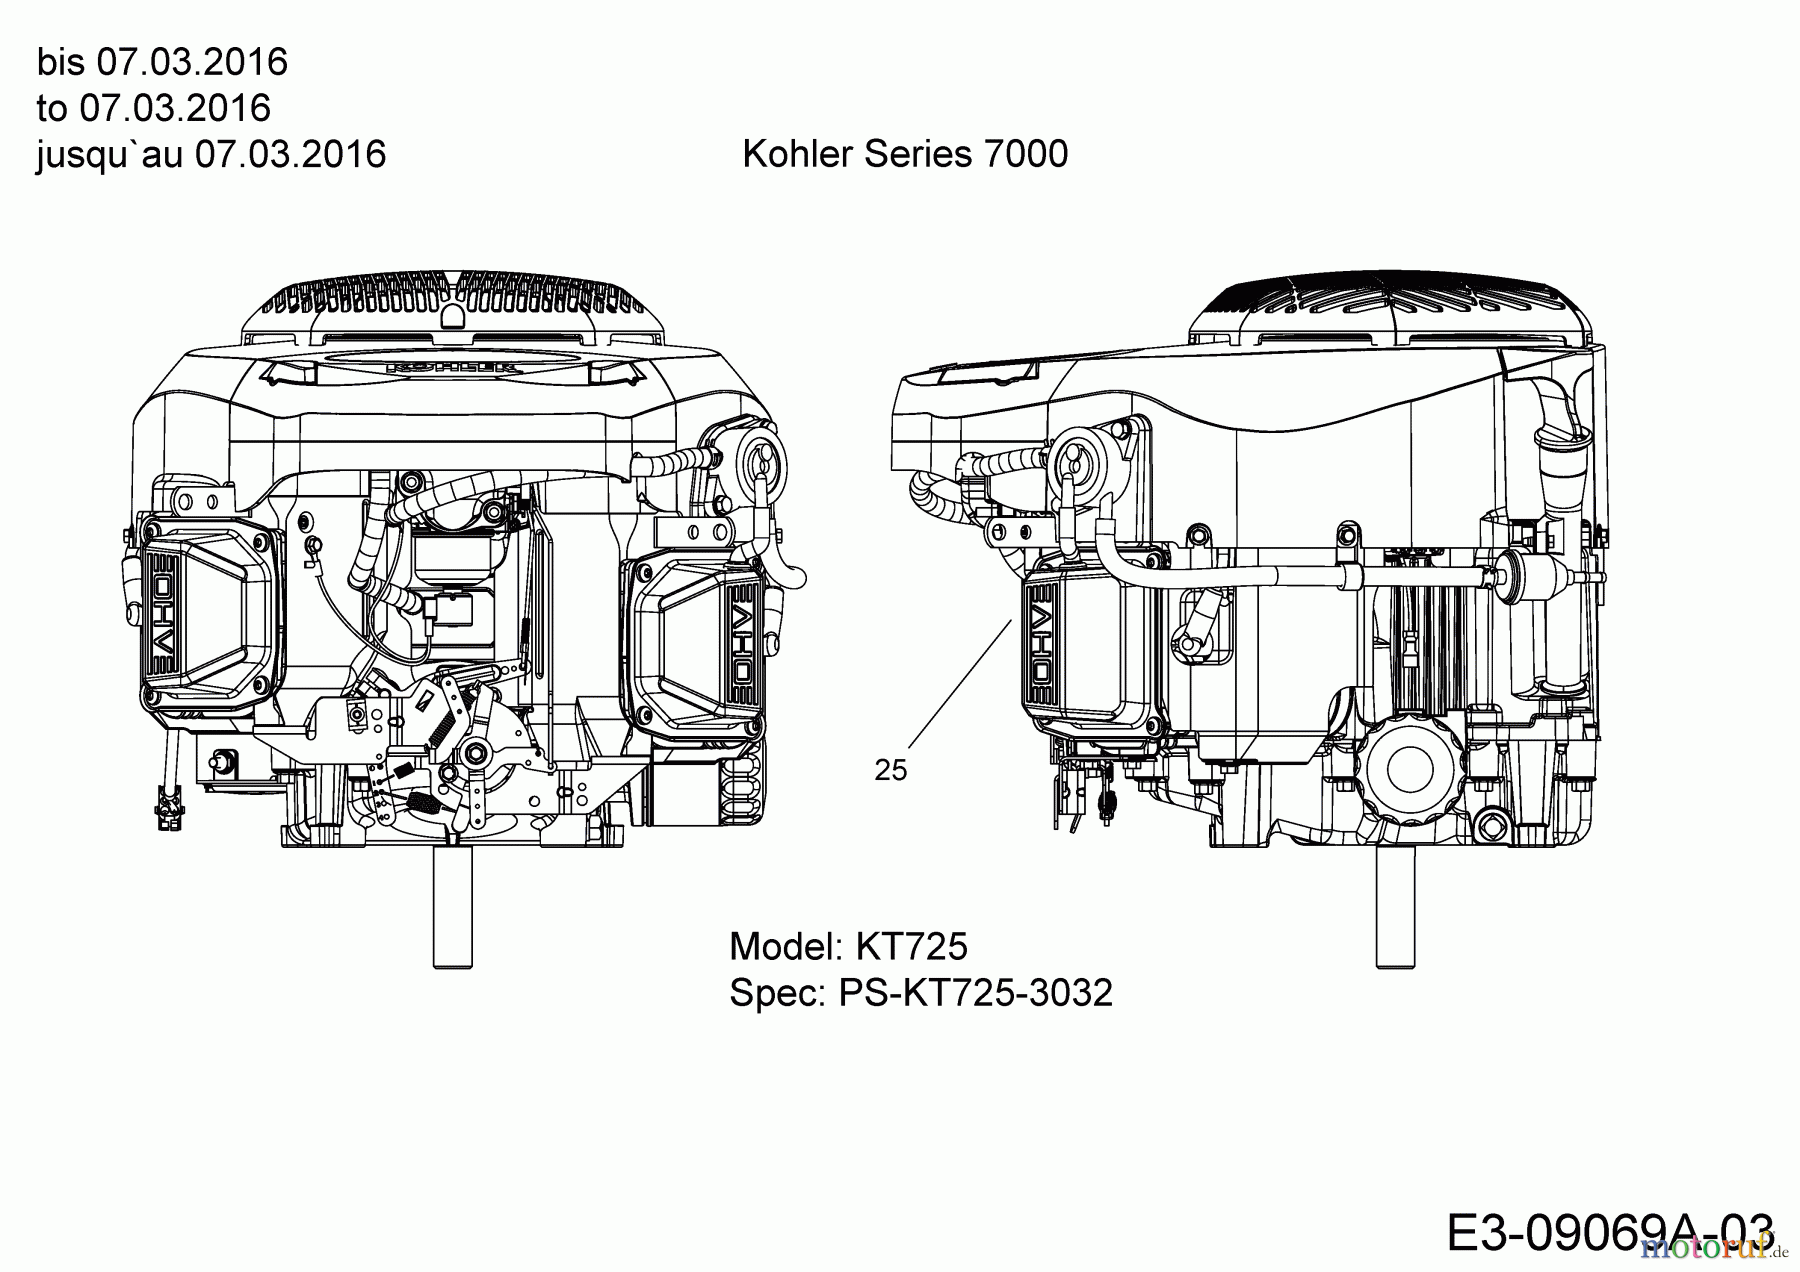  Massey Ferguson Rasentraktoren MF 41-22 RD 13HP91GN395  (2016) Motor Kohler bis 07.03.2016